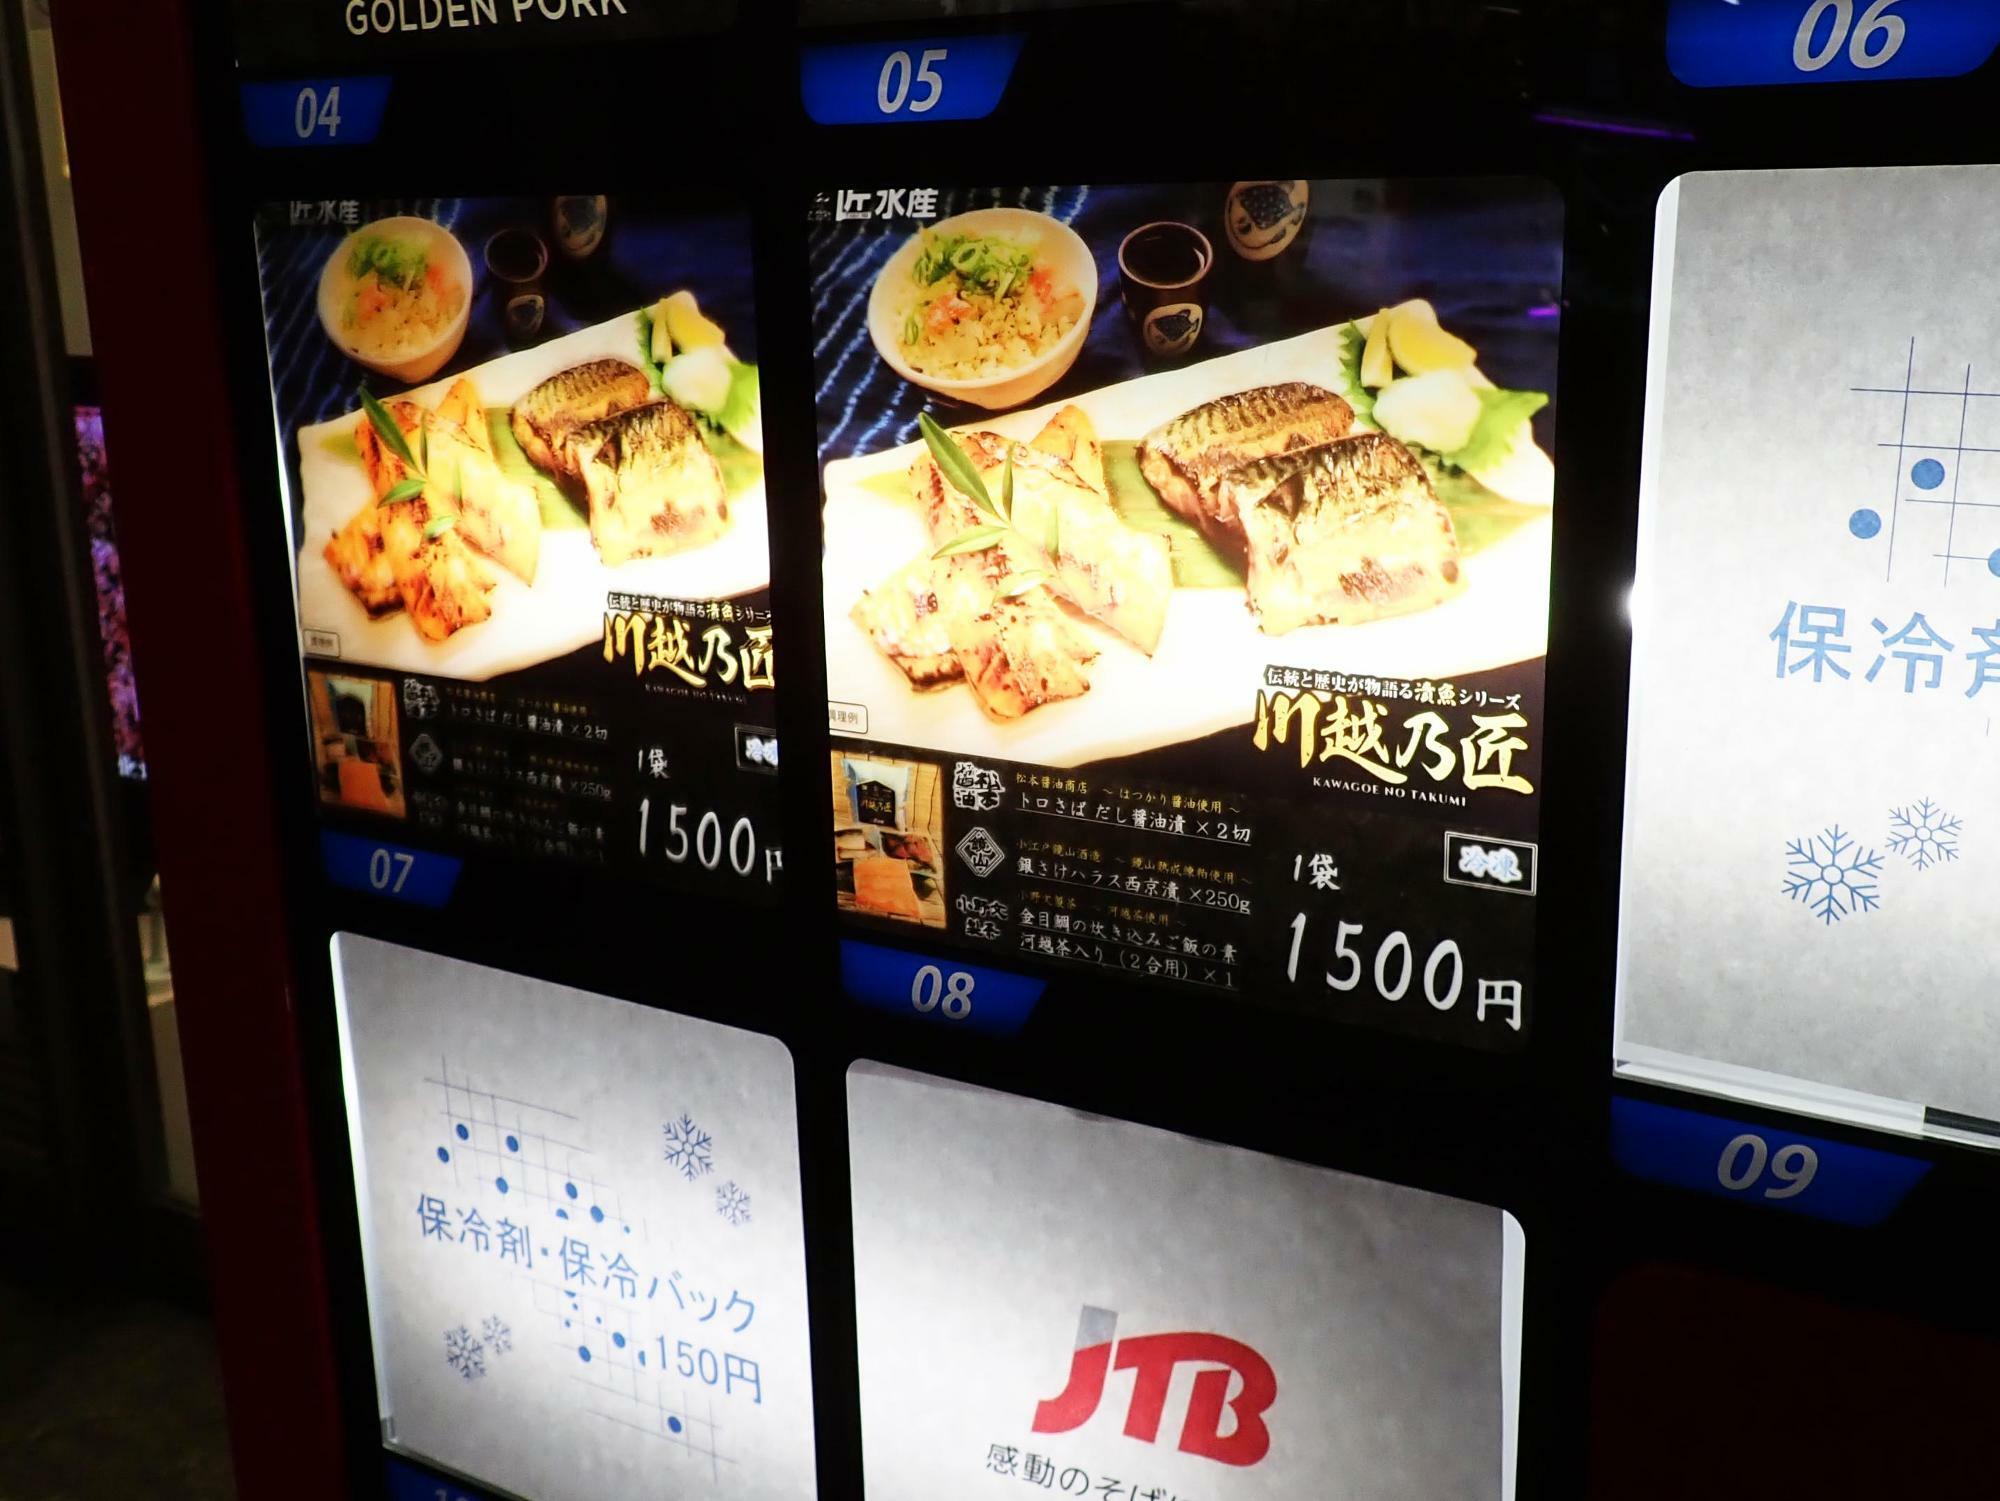 「JTB 川越クレアモール店」の店頭の自動販売機では「金目鯛の炊き込みご飯の素 河越茶入り（2合用）×1」などが売られています